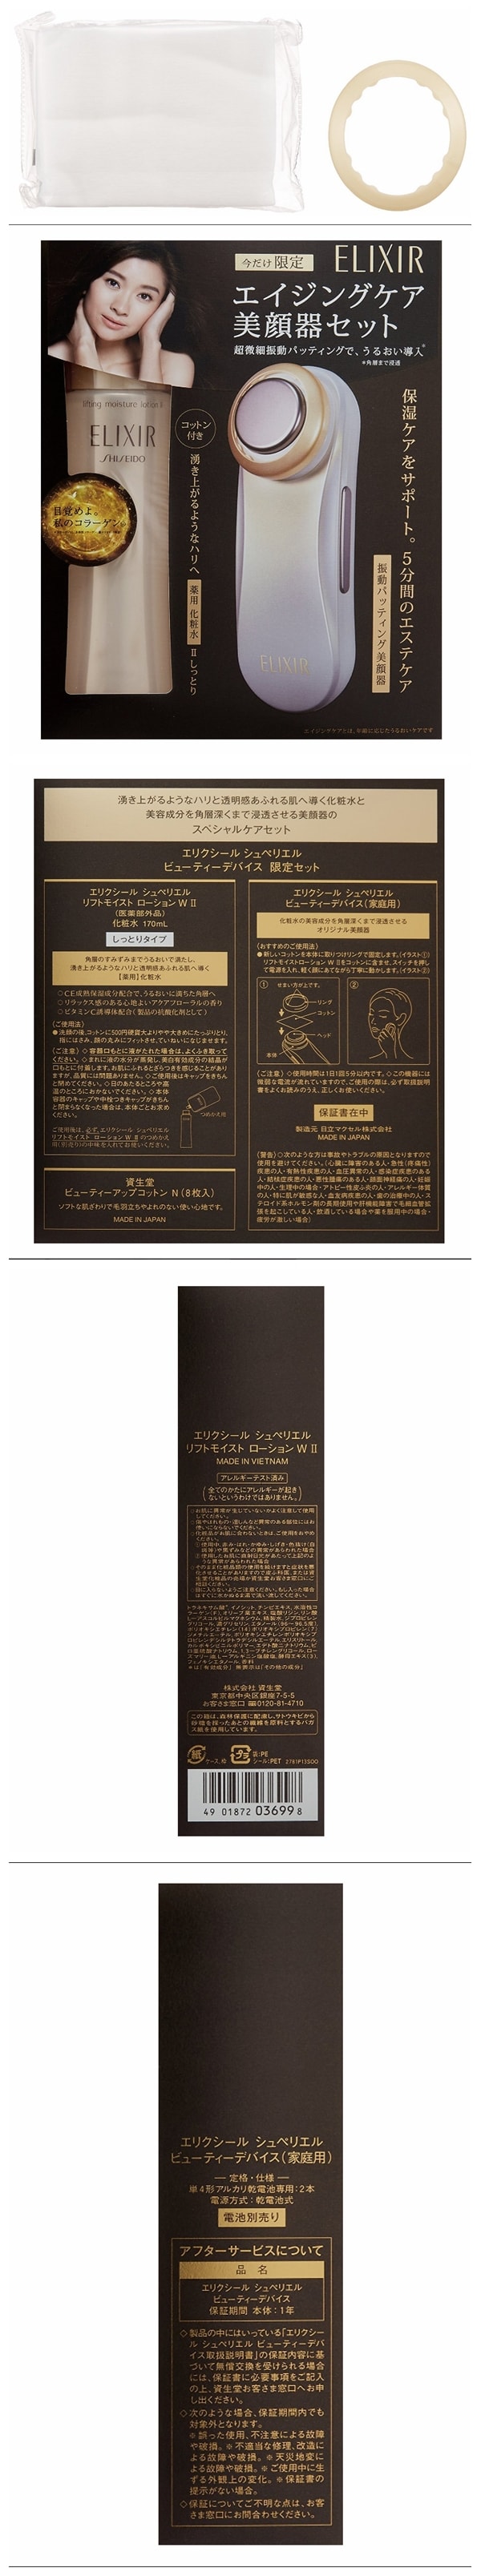 【日本直邮】日本本土 怡丽丝尔 限定套装: ELIXIR 滋润紧致2号化妆水 170ml+日立美容仪1部